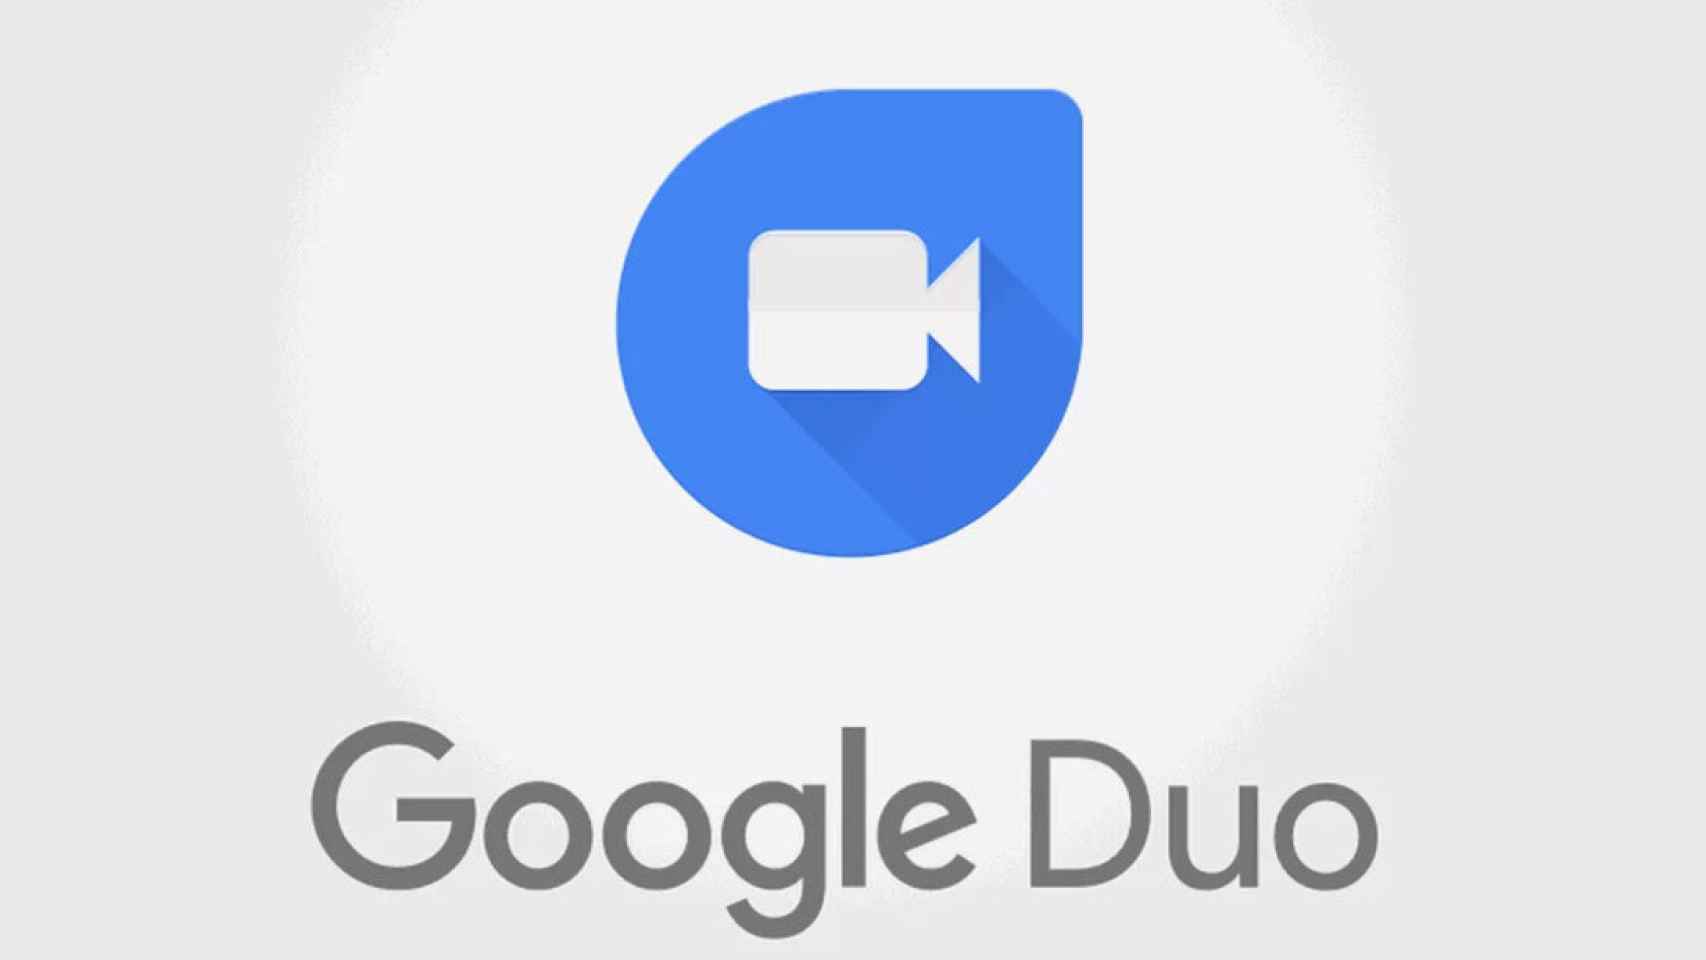 Google Duo tendrá funciones colaborativas